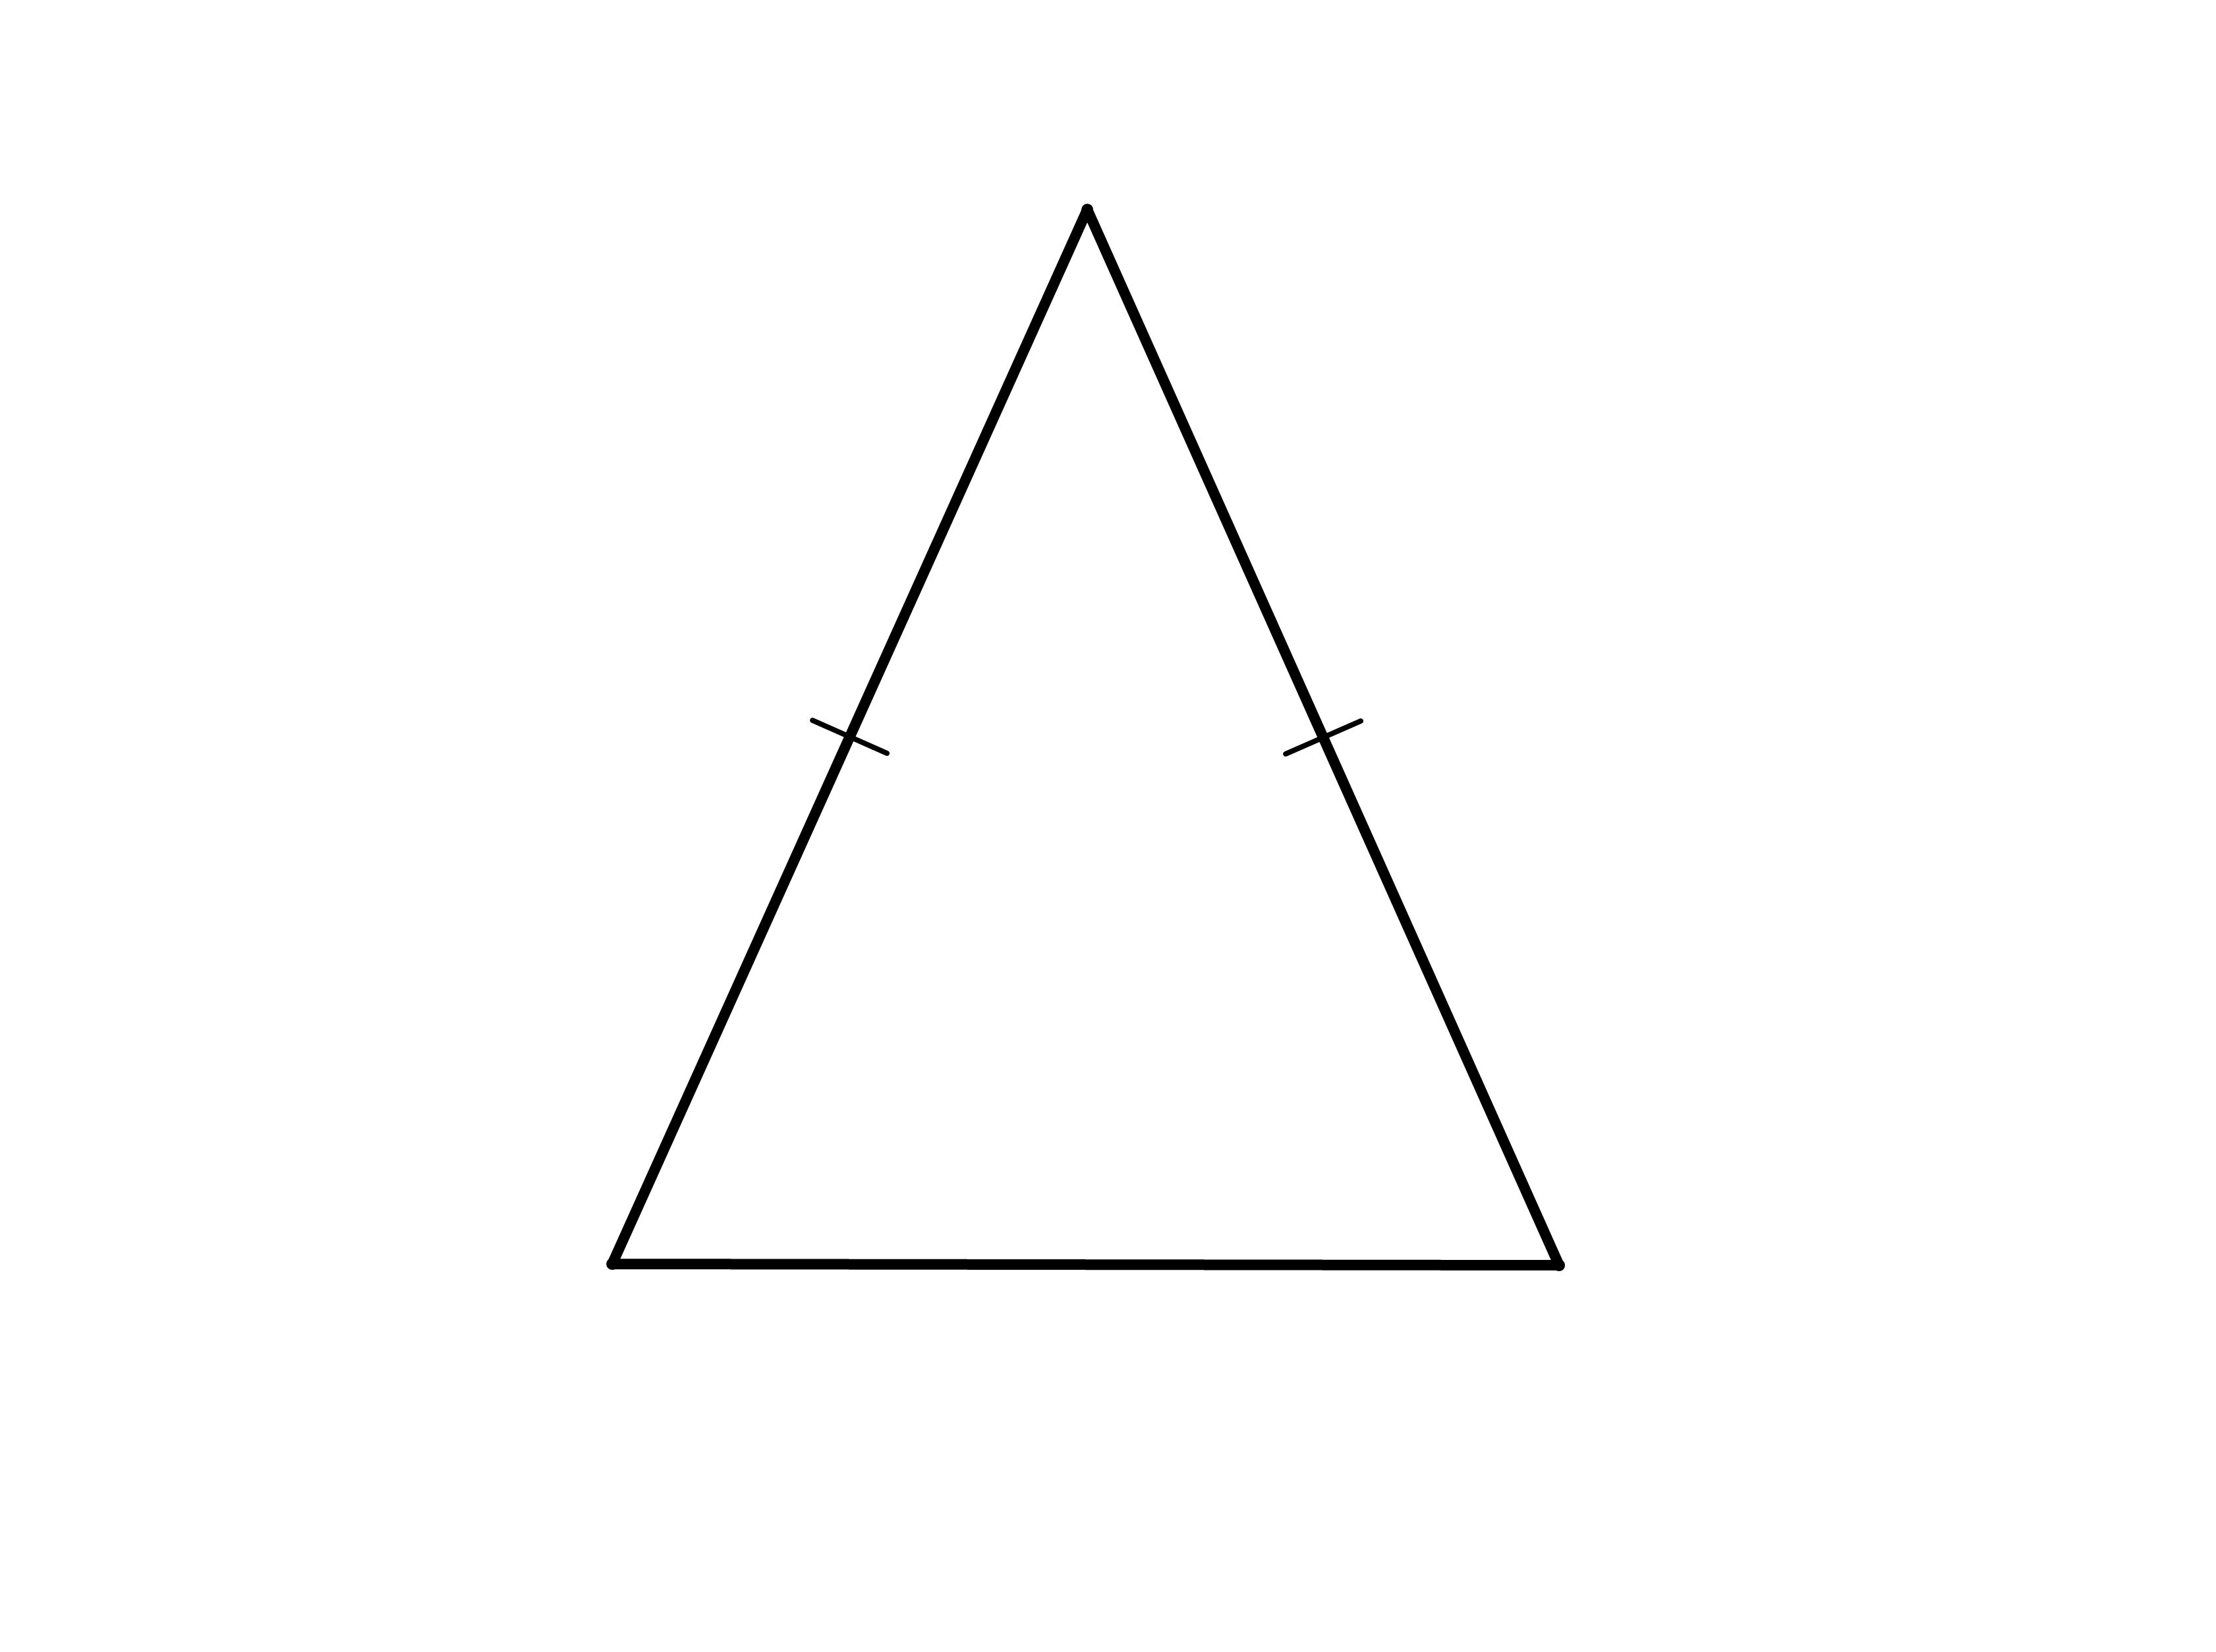 types of triangle isosceles